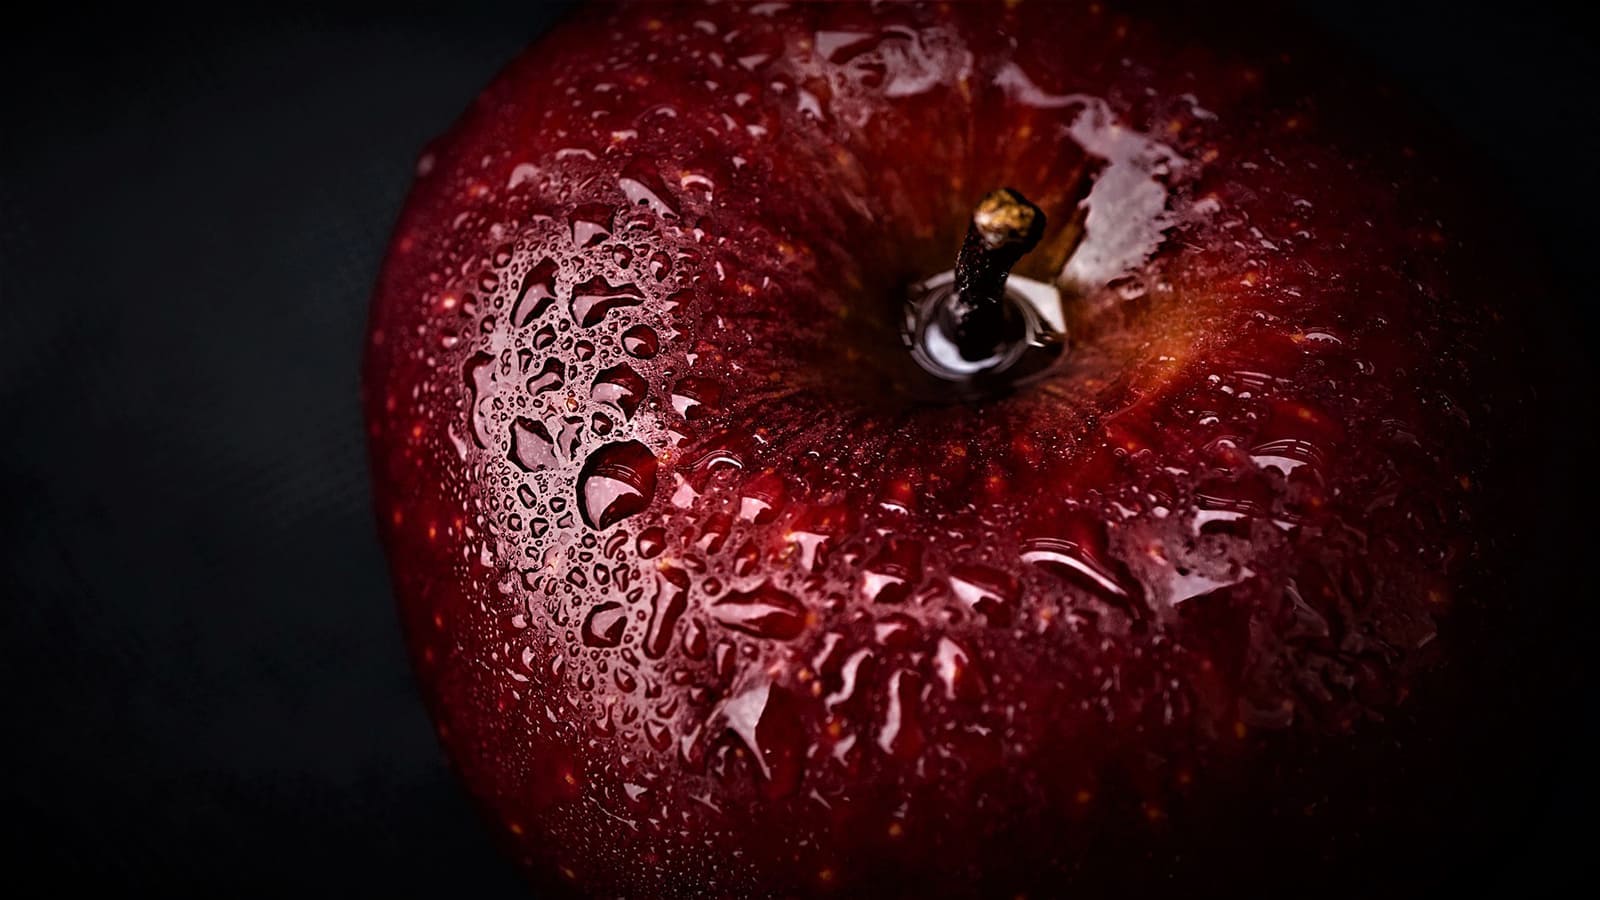 Hình ảnh đẹp về trái táo đỏ dước góc ảnh nghệ thuật làm hình nền máy tính